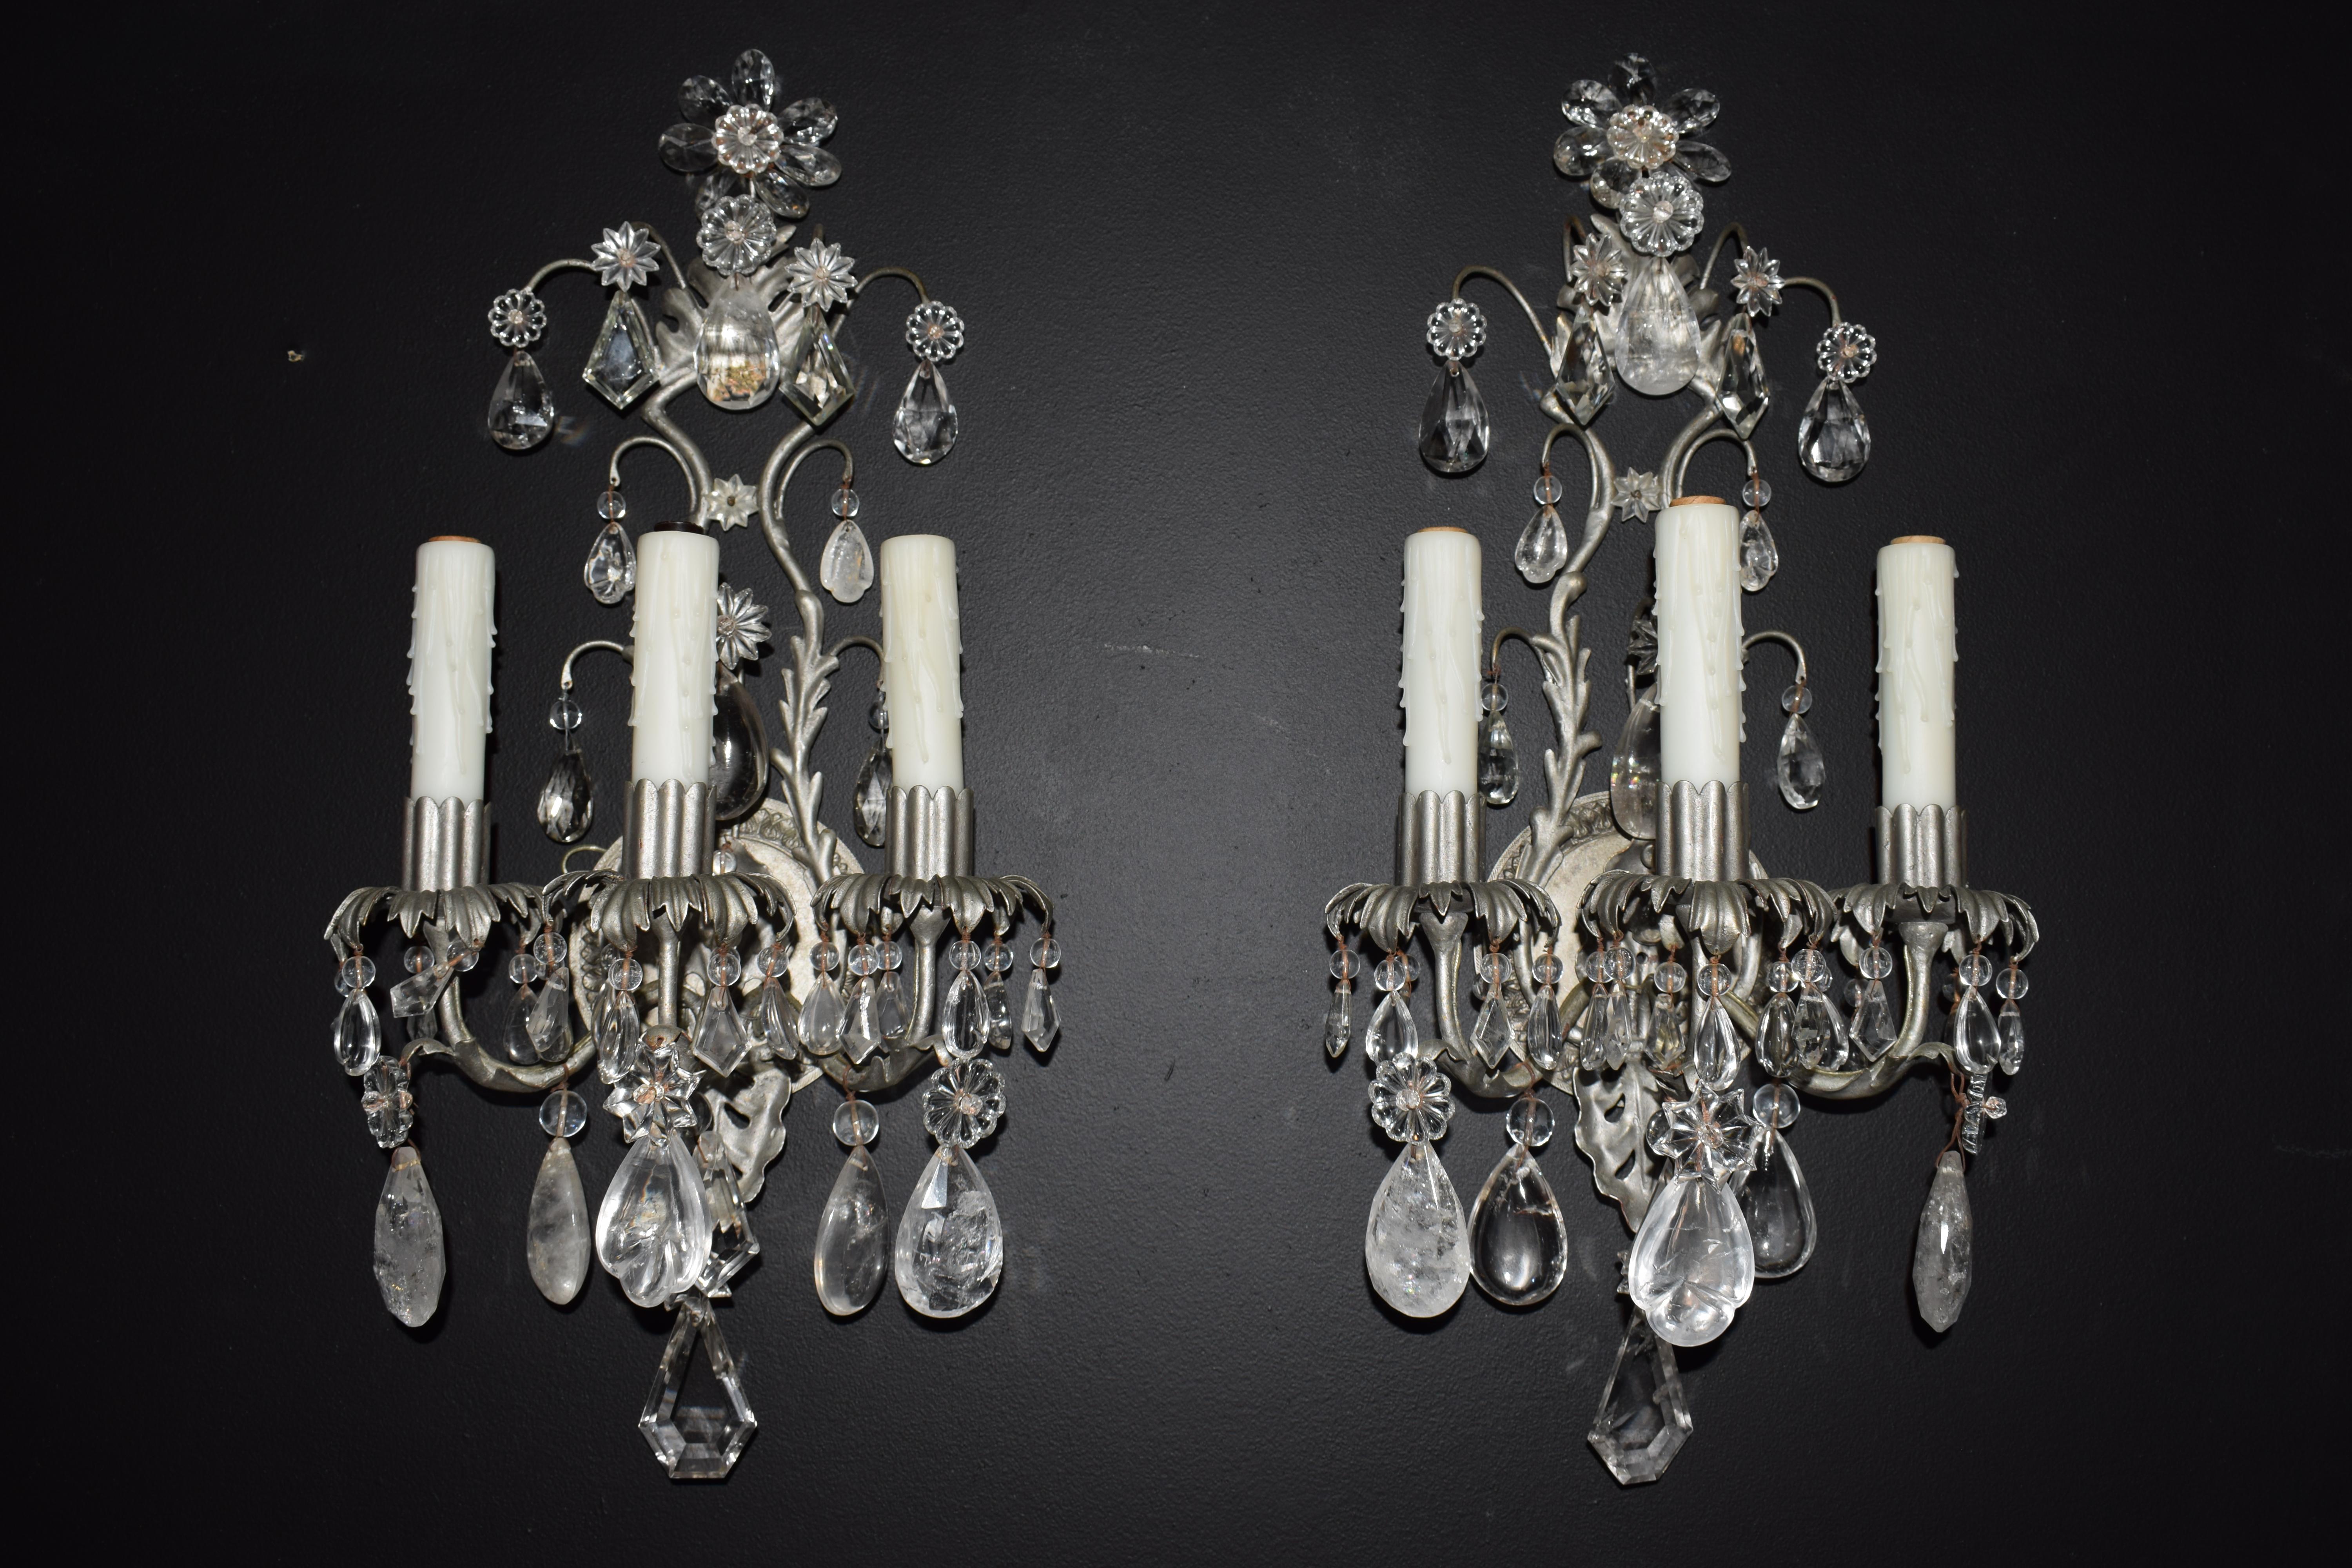 Ein schönes Paar versilberter Wandleuchter aus Kristall und Bergkristall.
Frankreich, um 1940. 3 Lichter
Abmessungen: Höhe 23